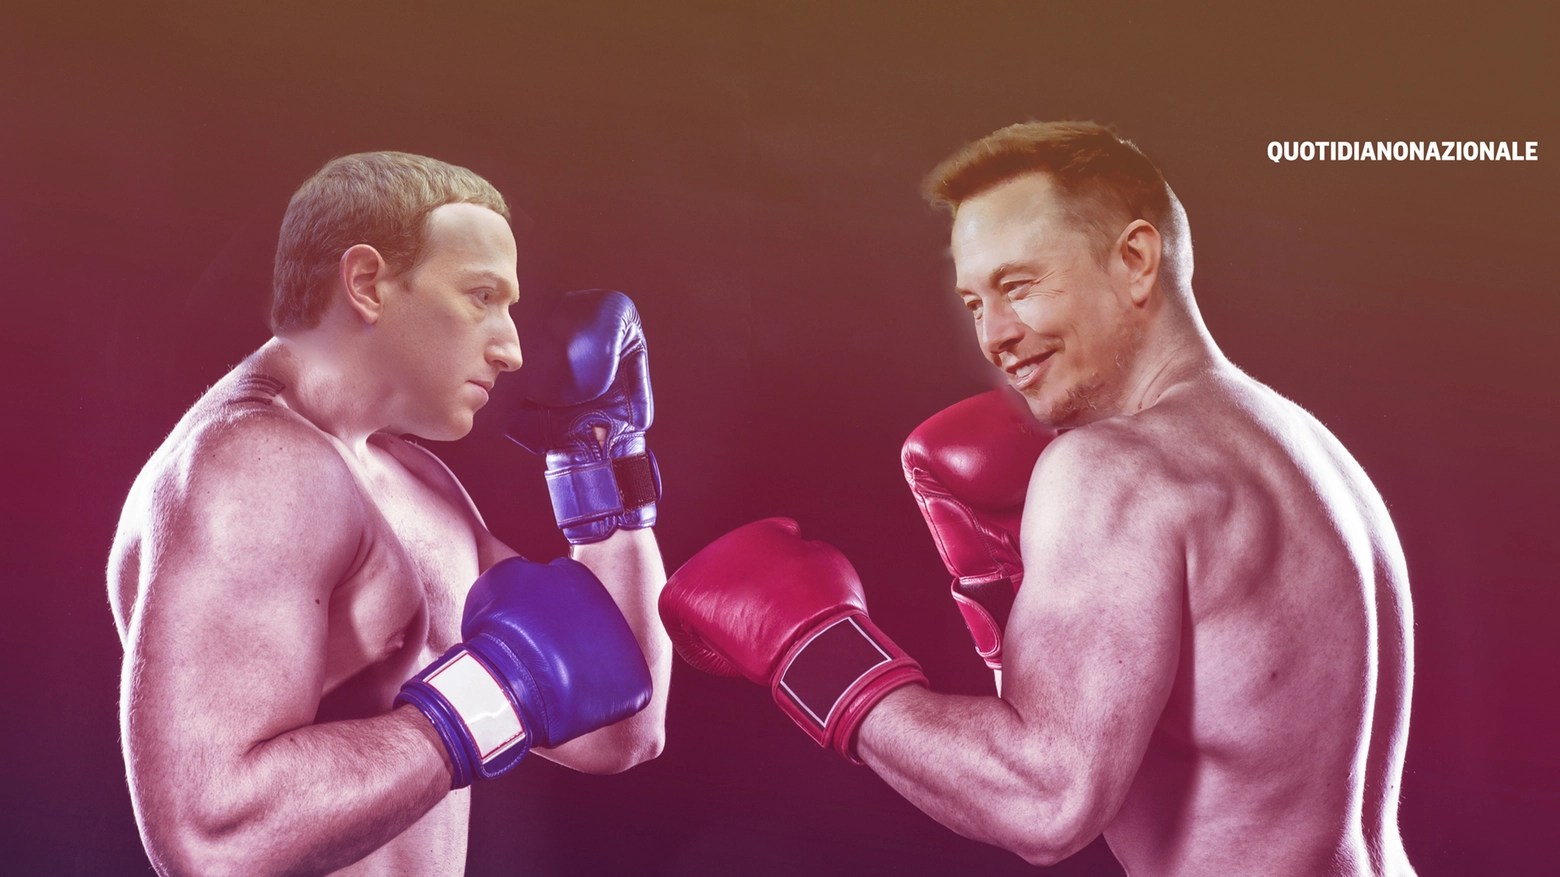 Zuckerberg e Musk nel montaggio fotografico si affrontano come due pugili